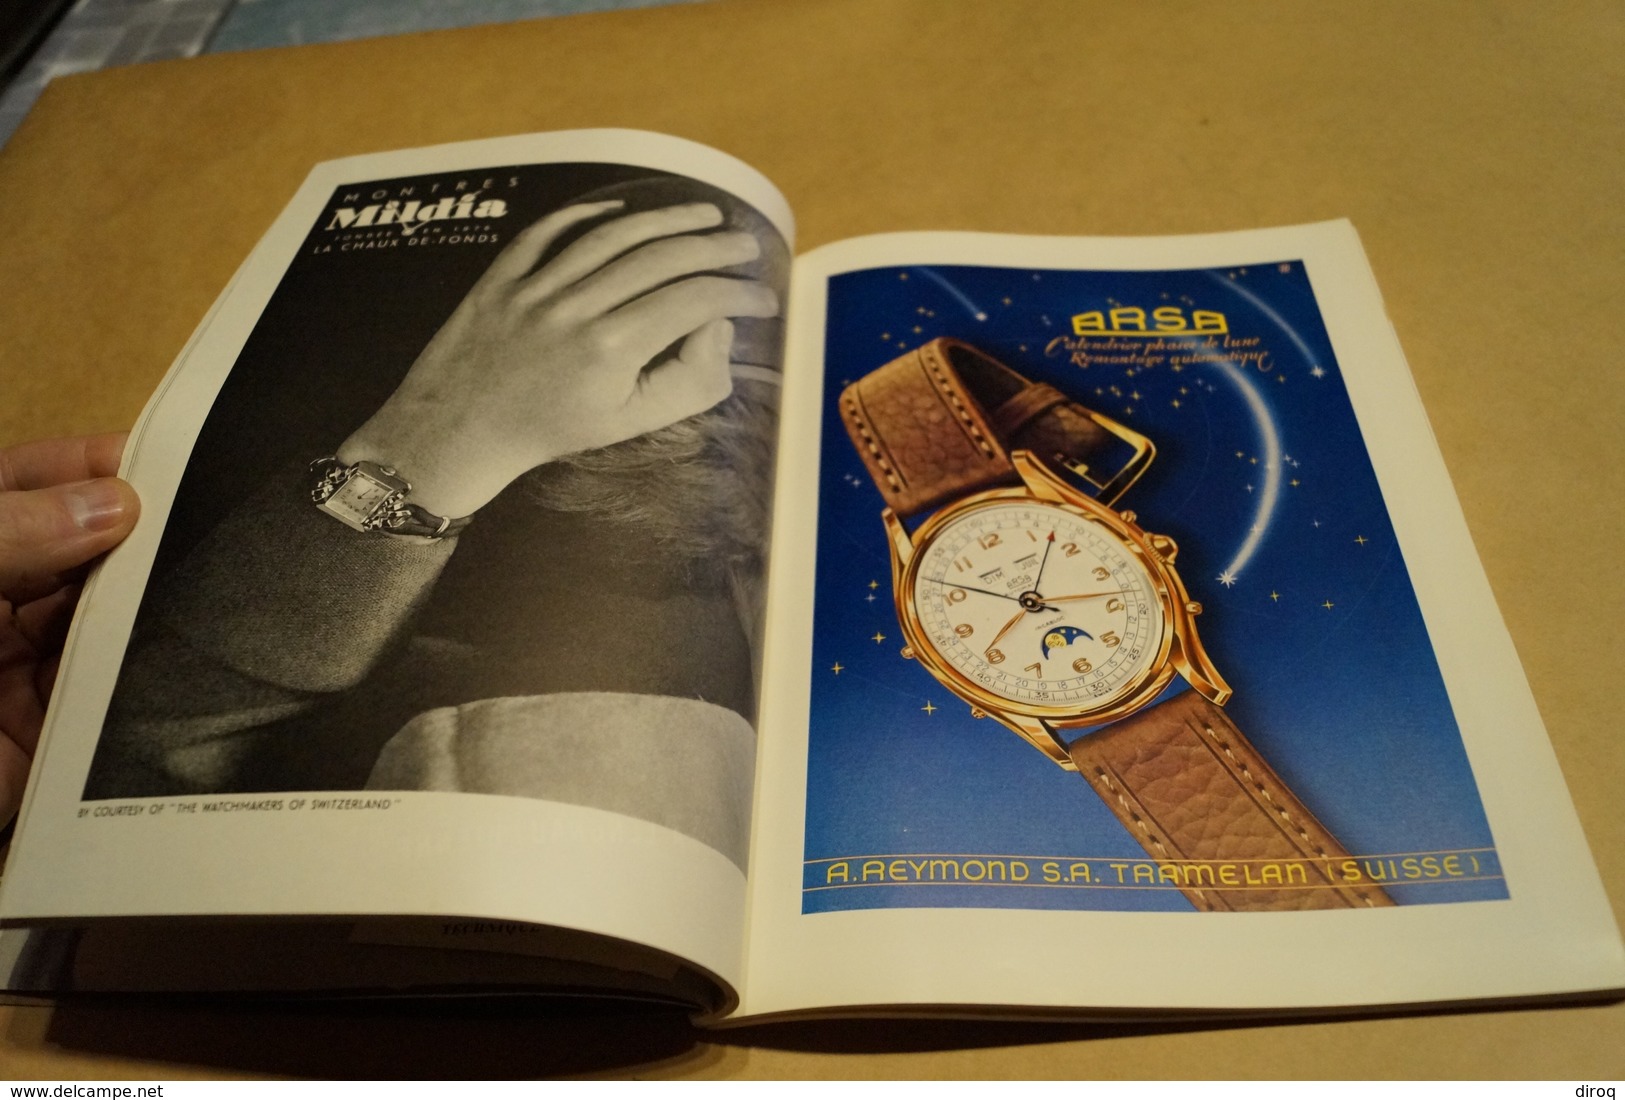 ancien catalogue 1950,Journal Suisse d'Horlogerie et Bijouterie,complet,26 Cm. sur 20 Cm.